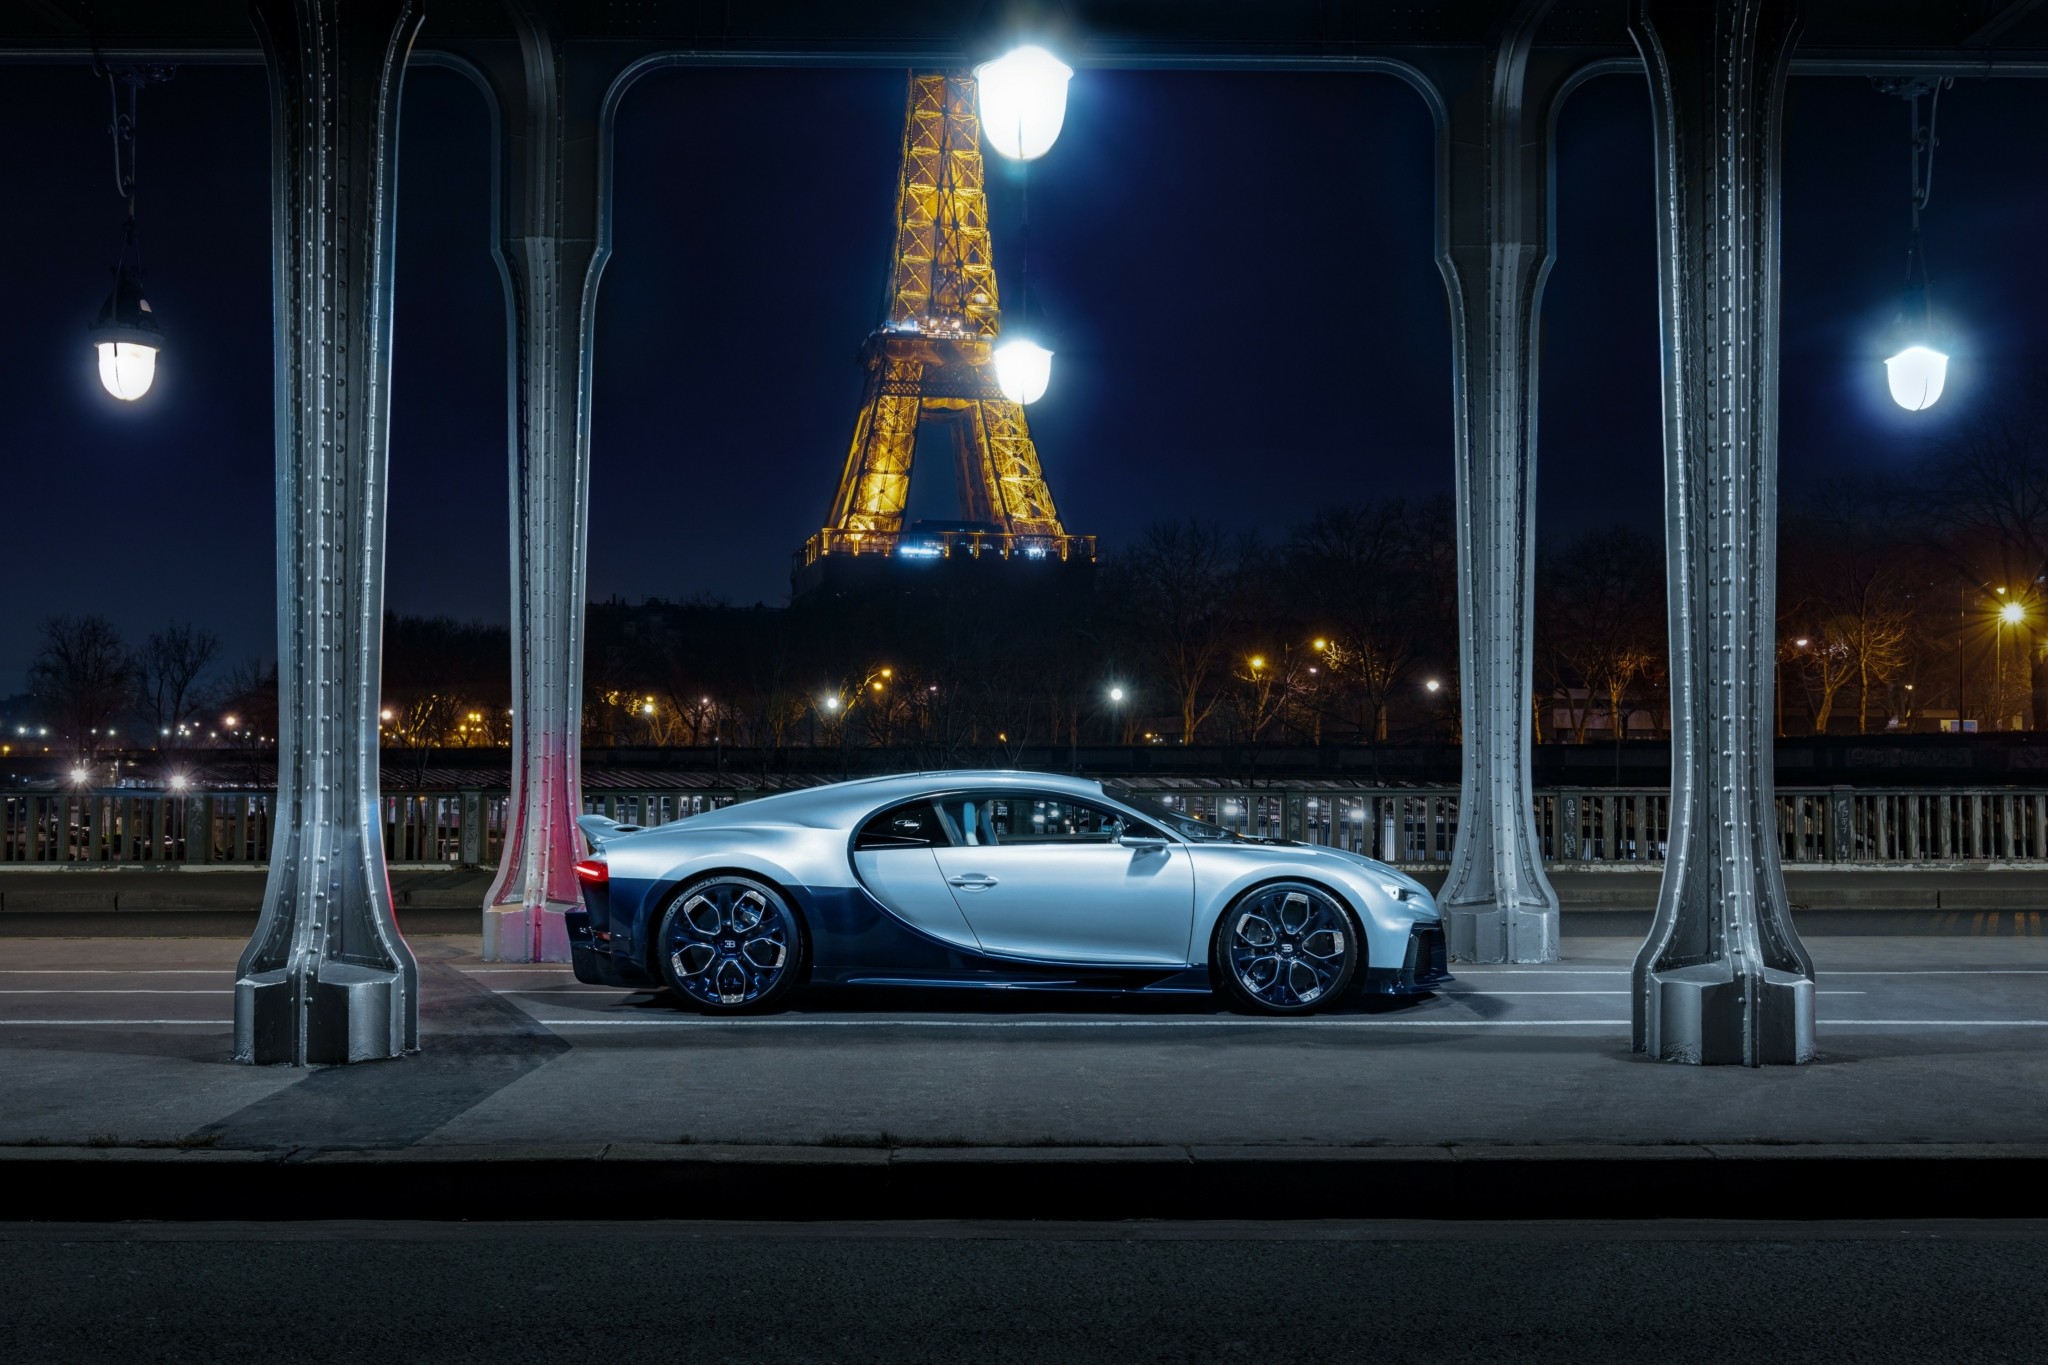 Η μία και μοναδική ολοκαίνουργια Bugatti με τον θρυλικό κινητήρα των 1.500 ίππων πουλήθηκε στην πιο ακριβή τιμή στην ιστορία